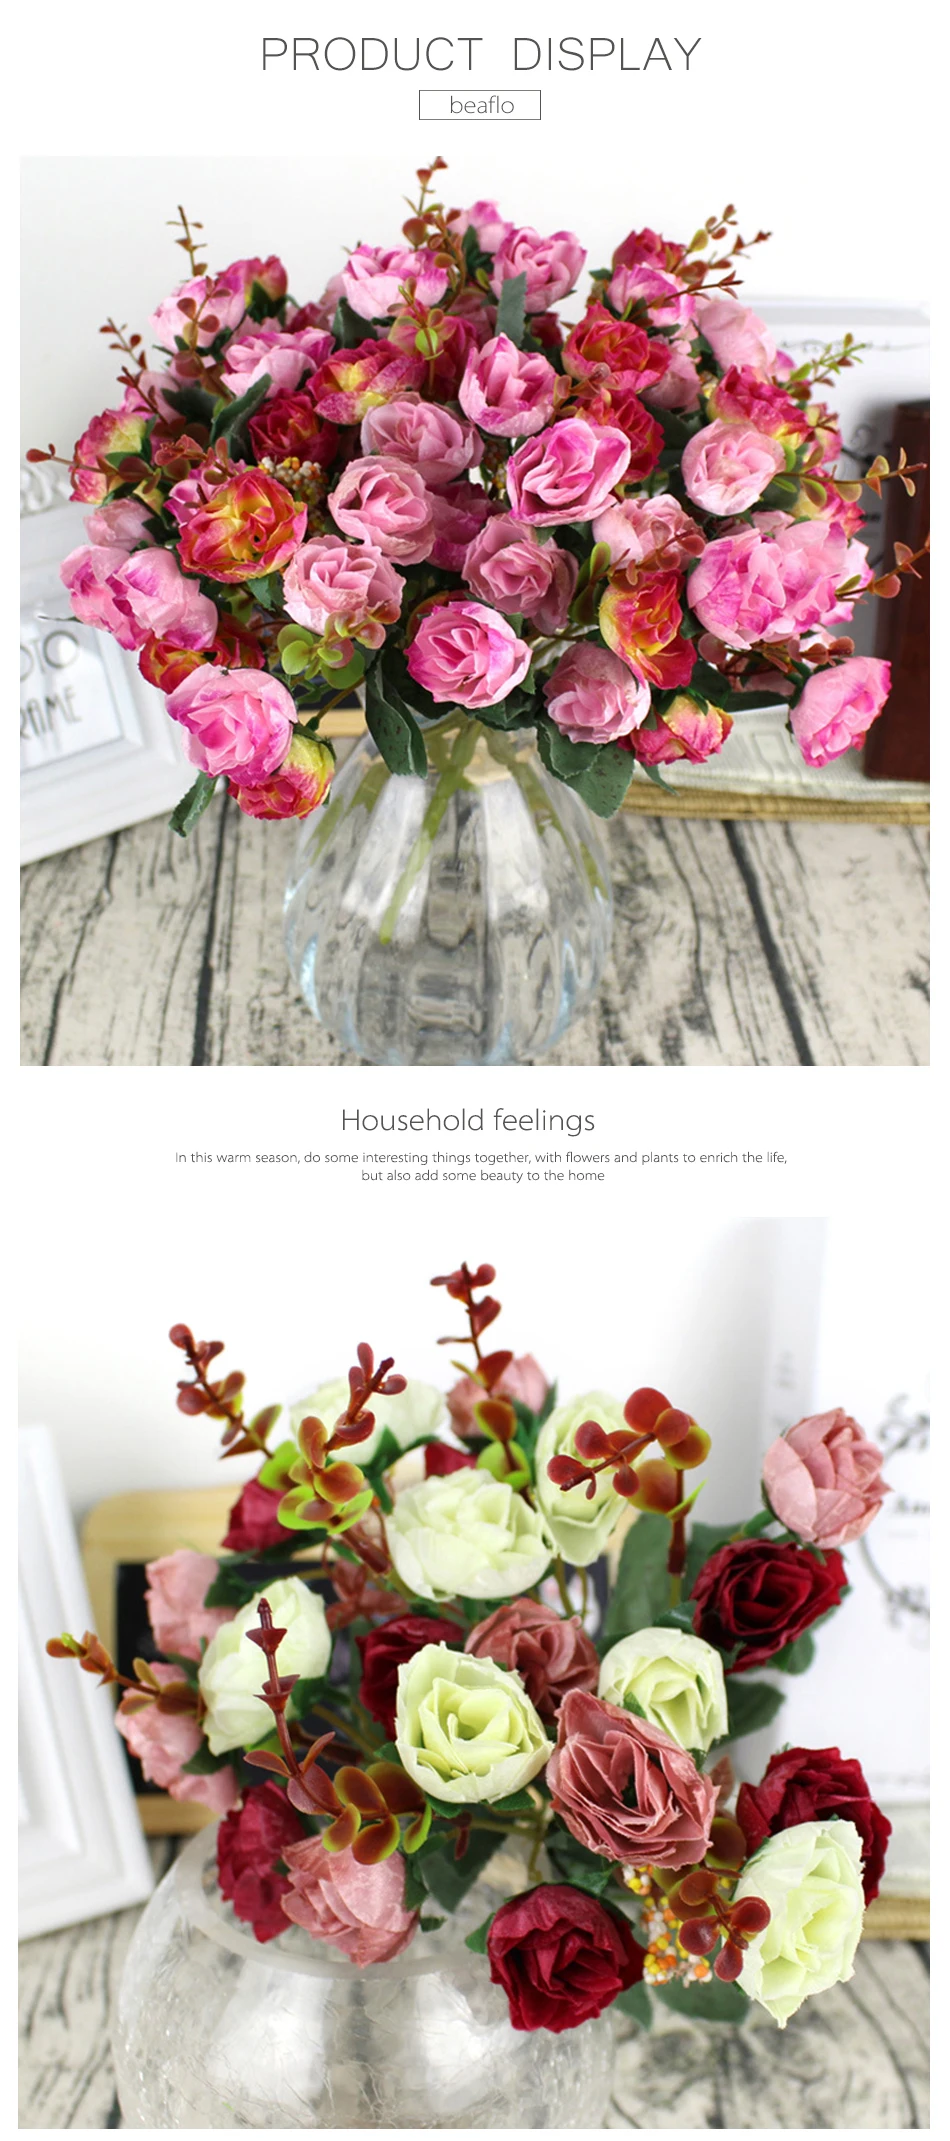 1 букет свежих искусственных роз 21 головы романтические DIY поддельные шелковые цветы для свадебной вечеринки украшения дома